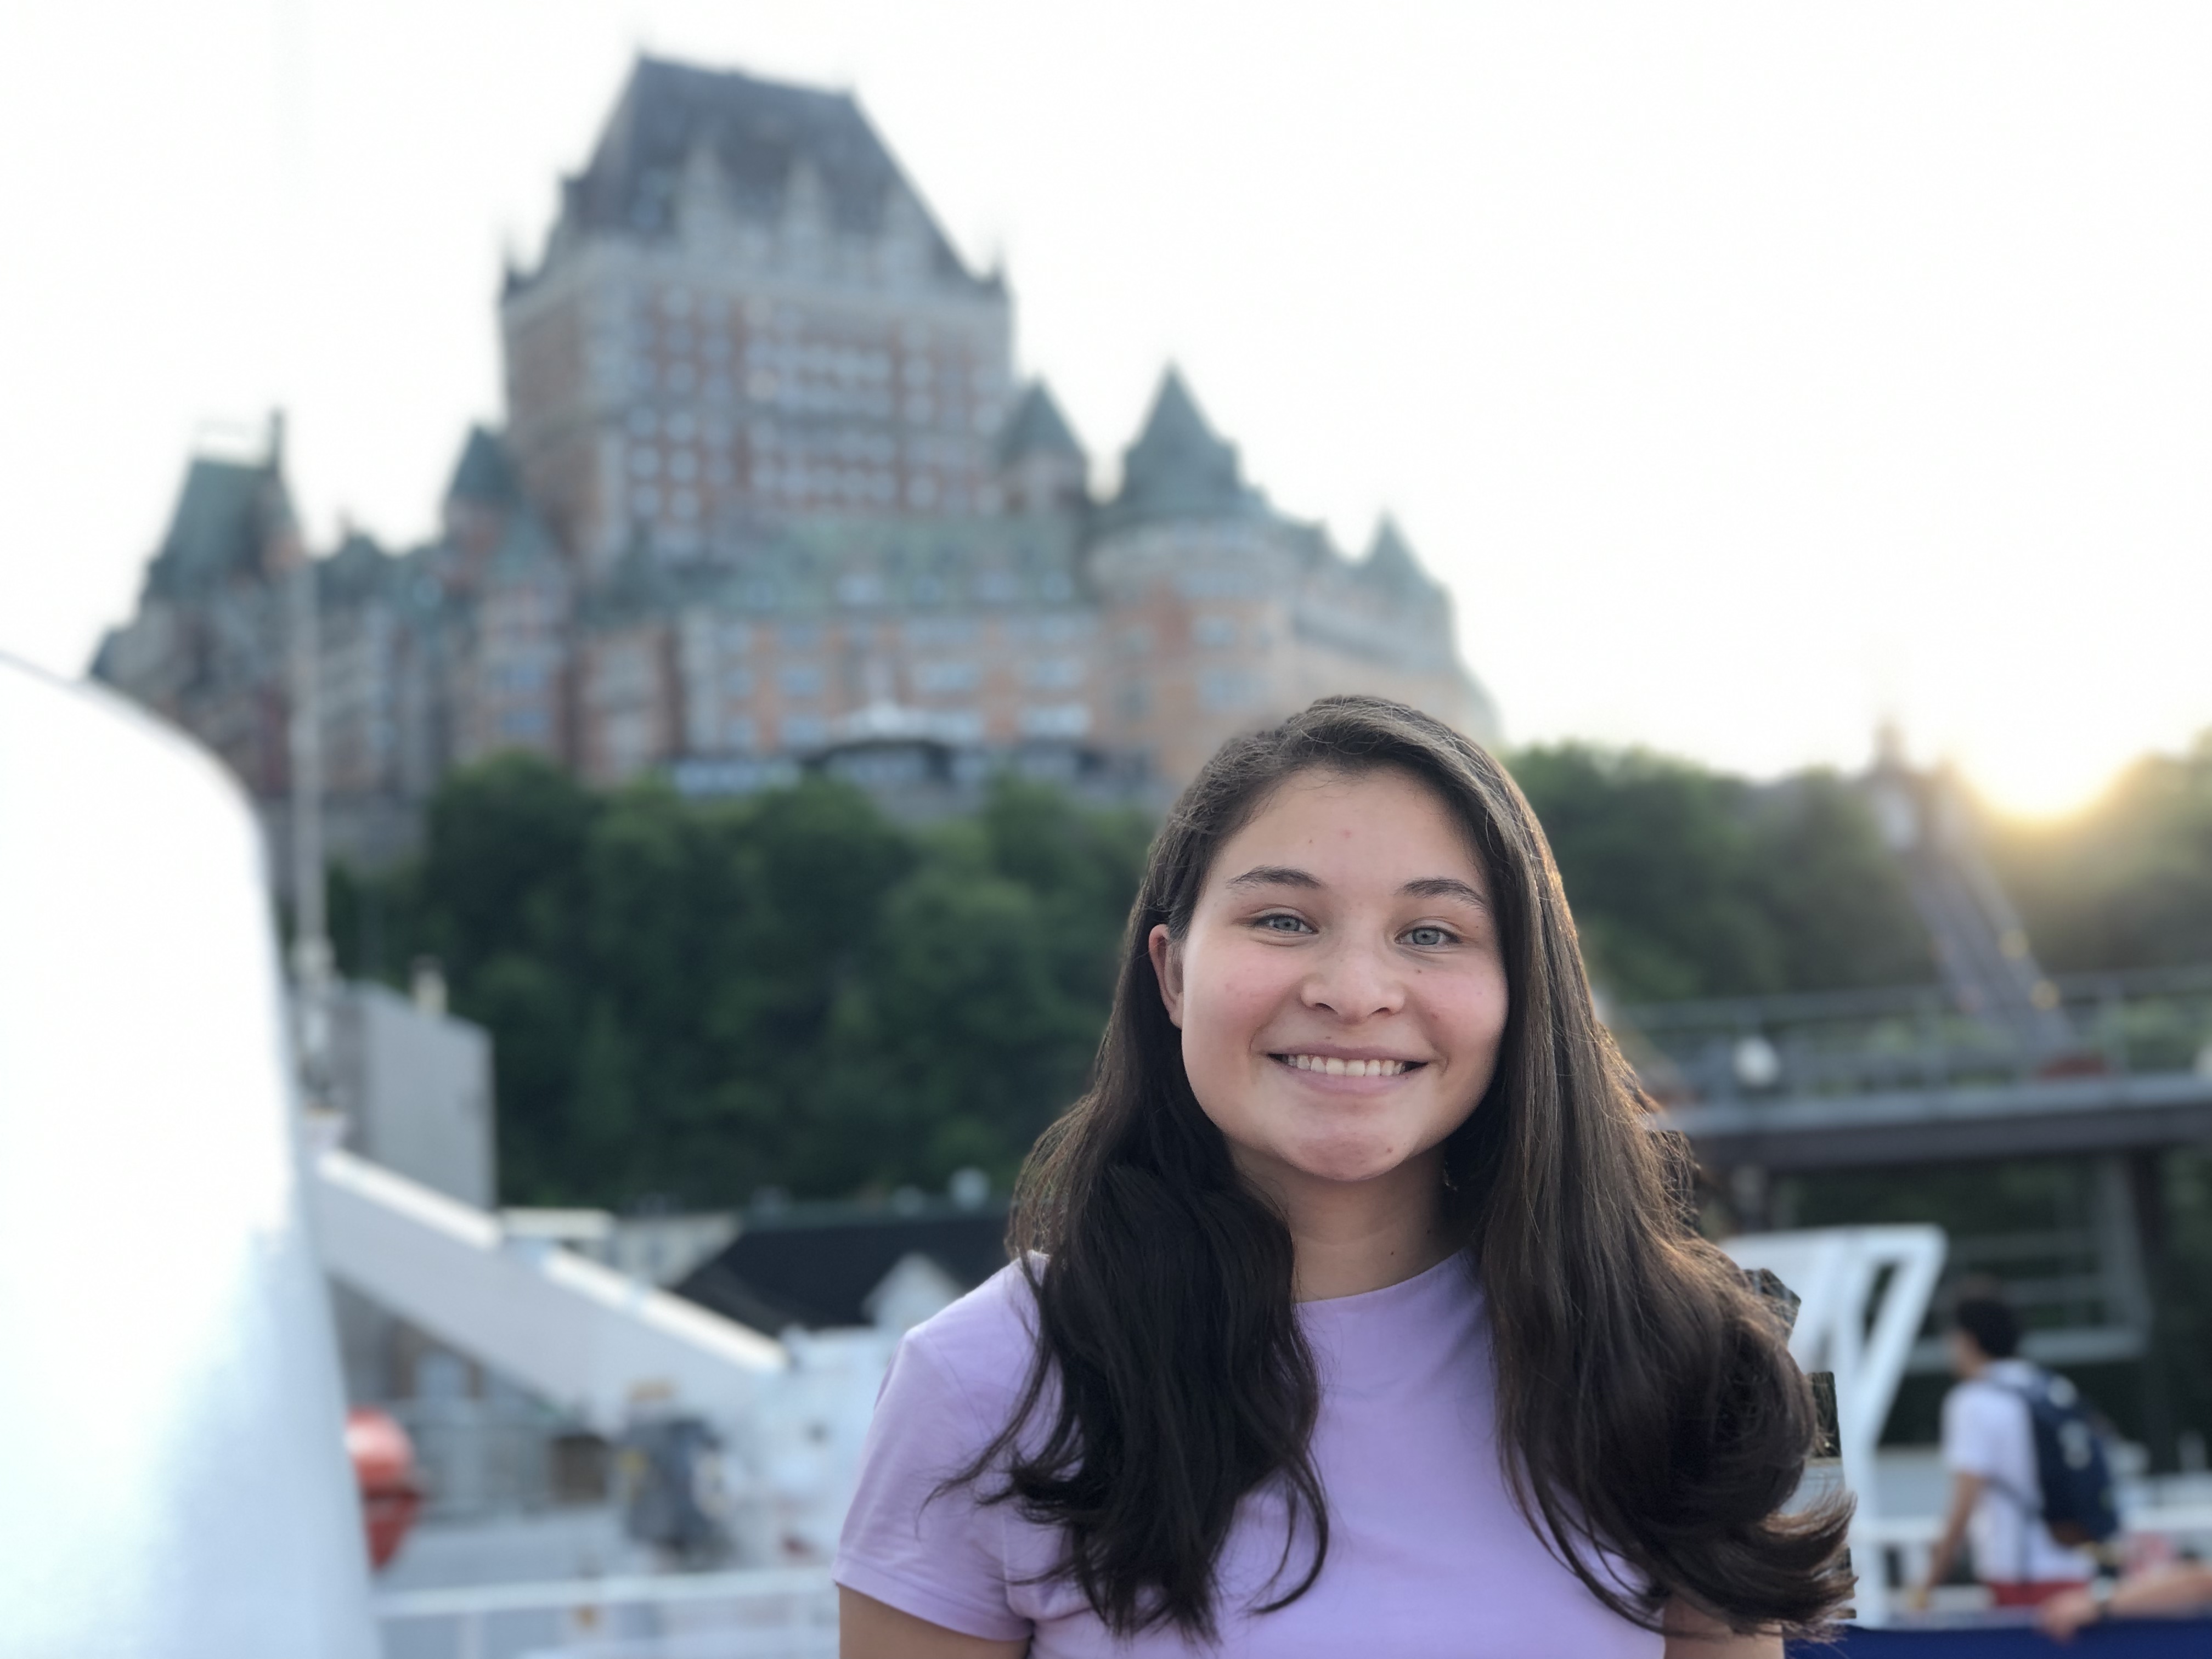 Tania viajó a Québec en su verano por parte del Tec de Monterrey